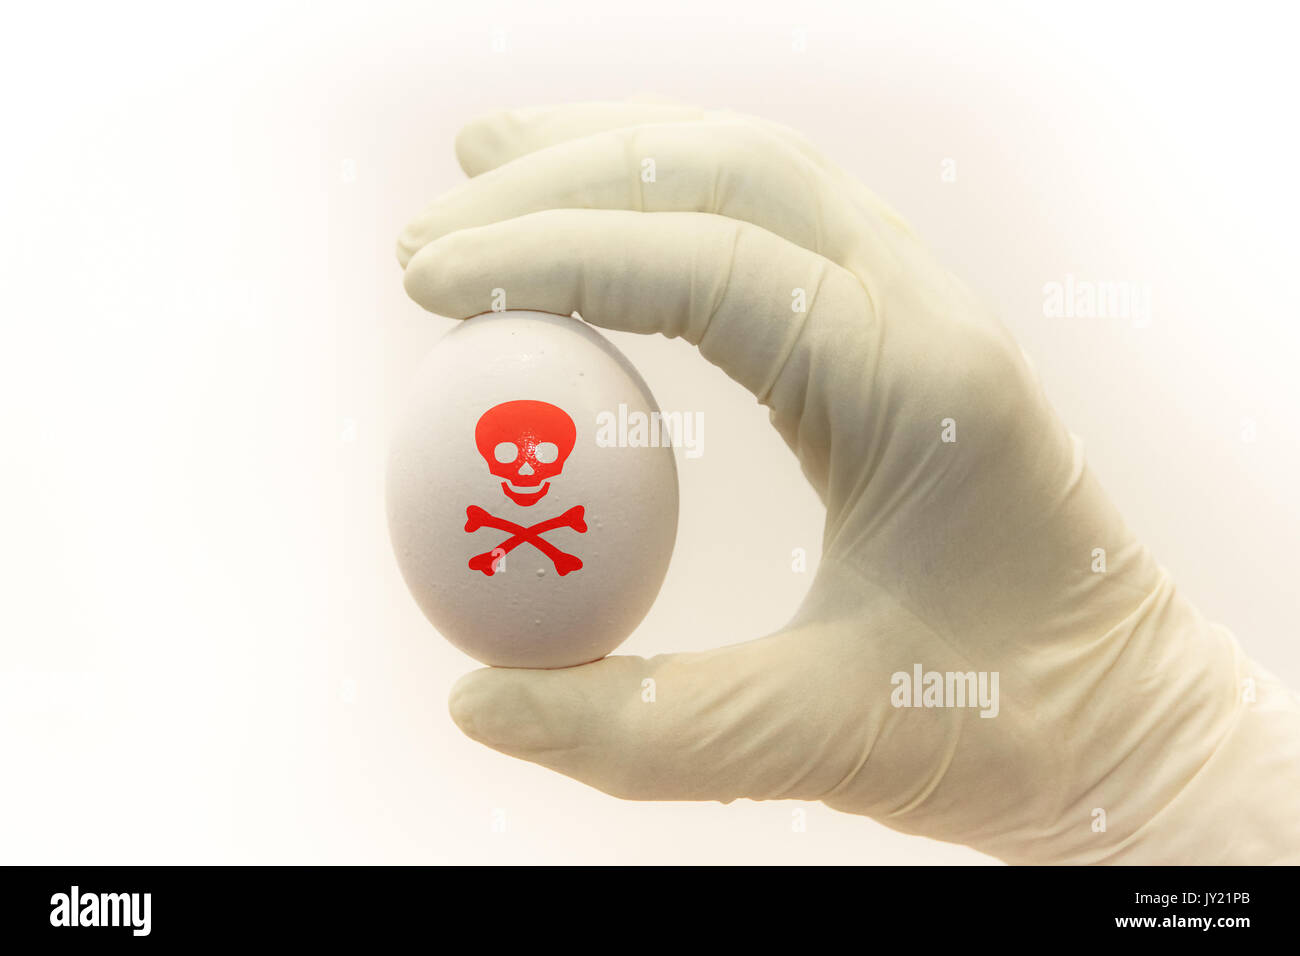 Isolierte Ei unter Untersuchung beig mit OP-Handschuhe mit Gift gefährlich Symbol untersucht übermalt. Konzept Bild für Lebensmittel Verunreinigungen Stockfoto